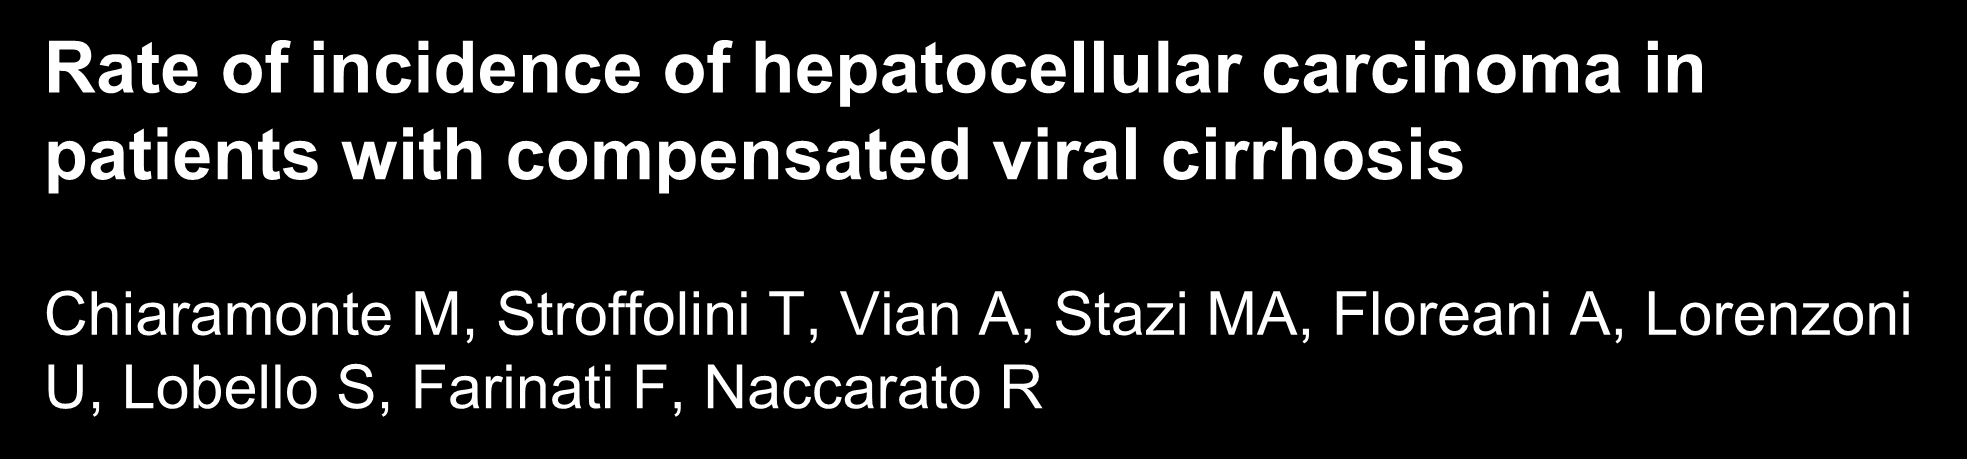 Rate of incidence of hepatocellular carcinoma in patients with compensated viral cirrhosis Chiaramonte M, Stroffolini T, Vian A, Stazi MA, Floreani A, Lorenzoni U, Lobello S, Farinati F, Naccarato R